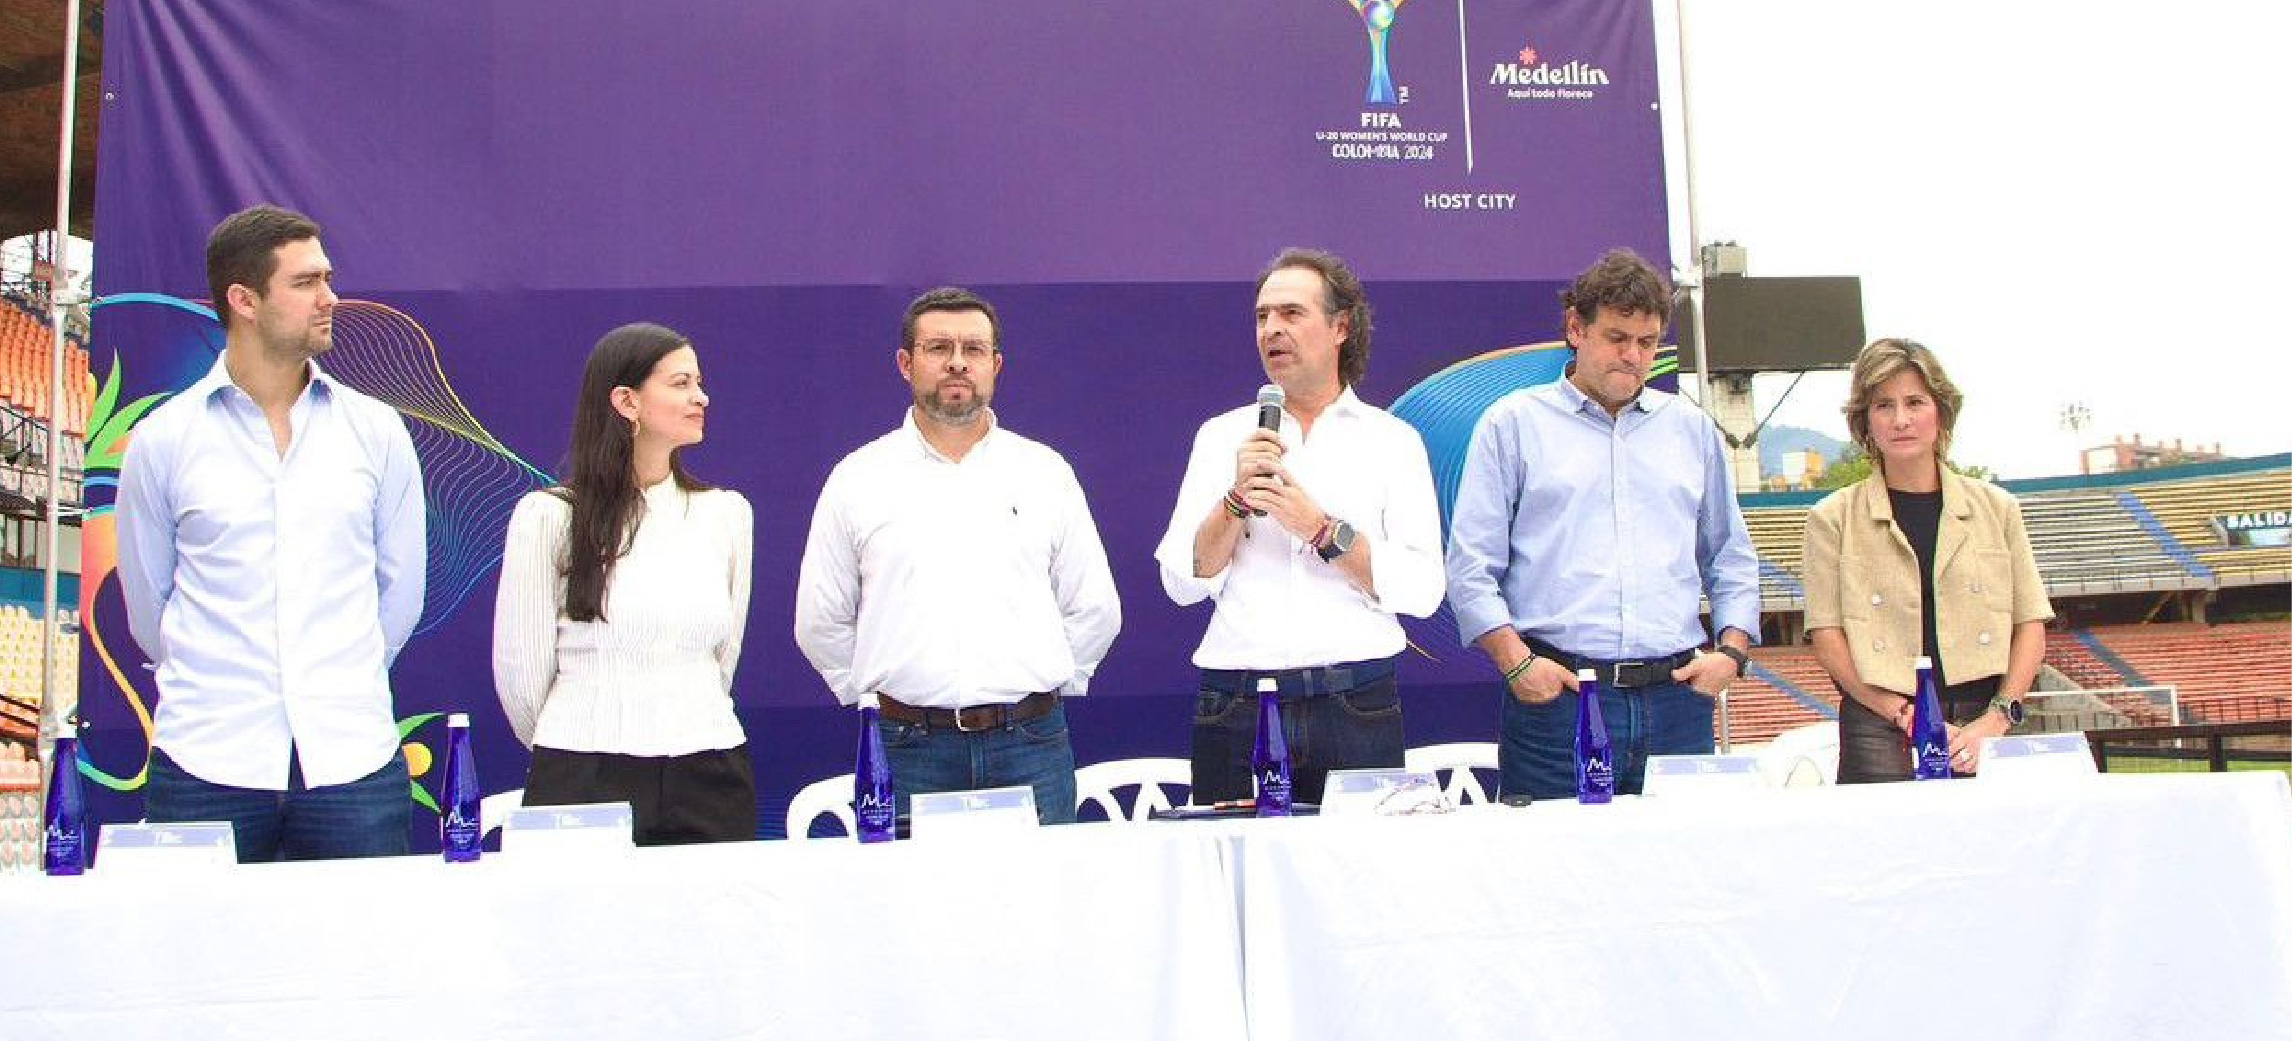 Medellín ajusta detalles para ser el mejor anfitrión de la Copa Mundial Femenina Sub-20 de la FIFA